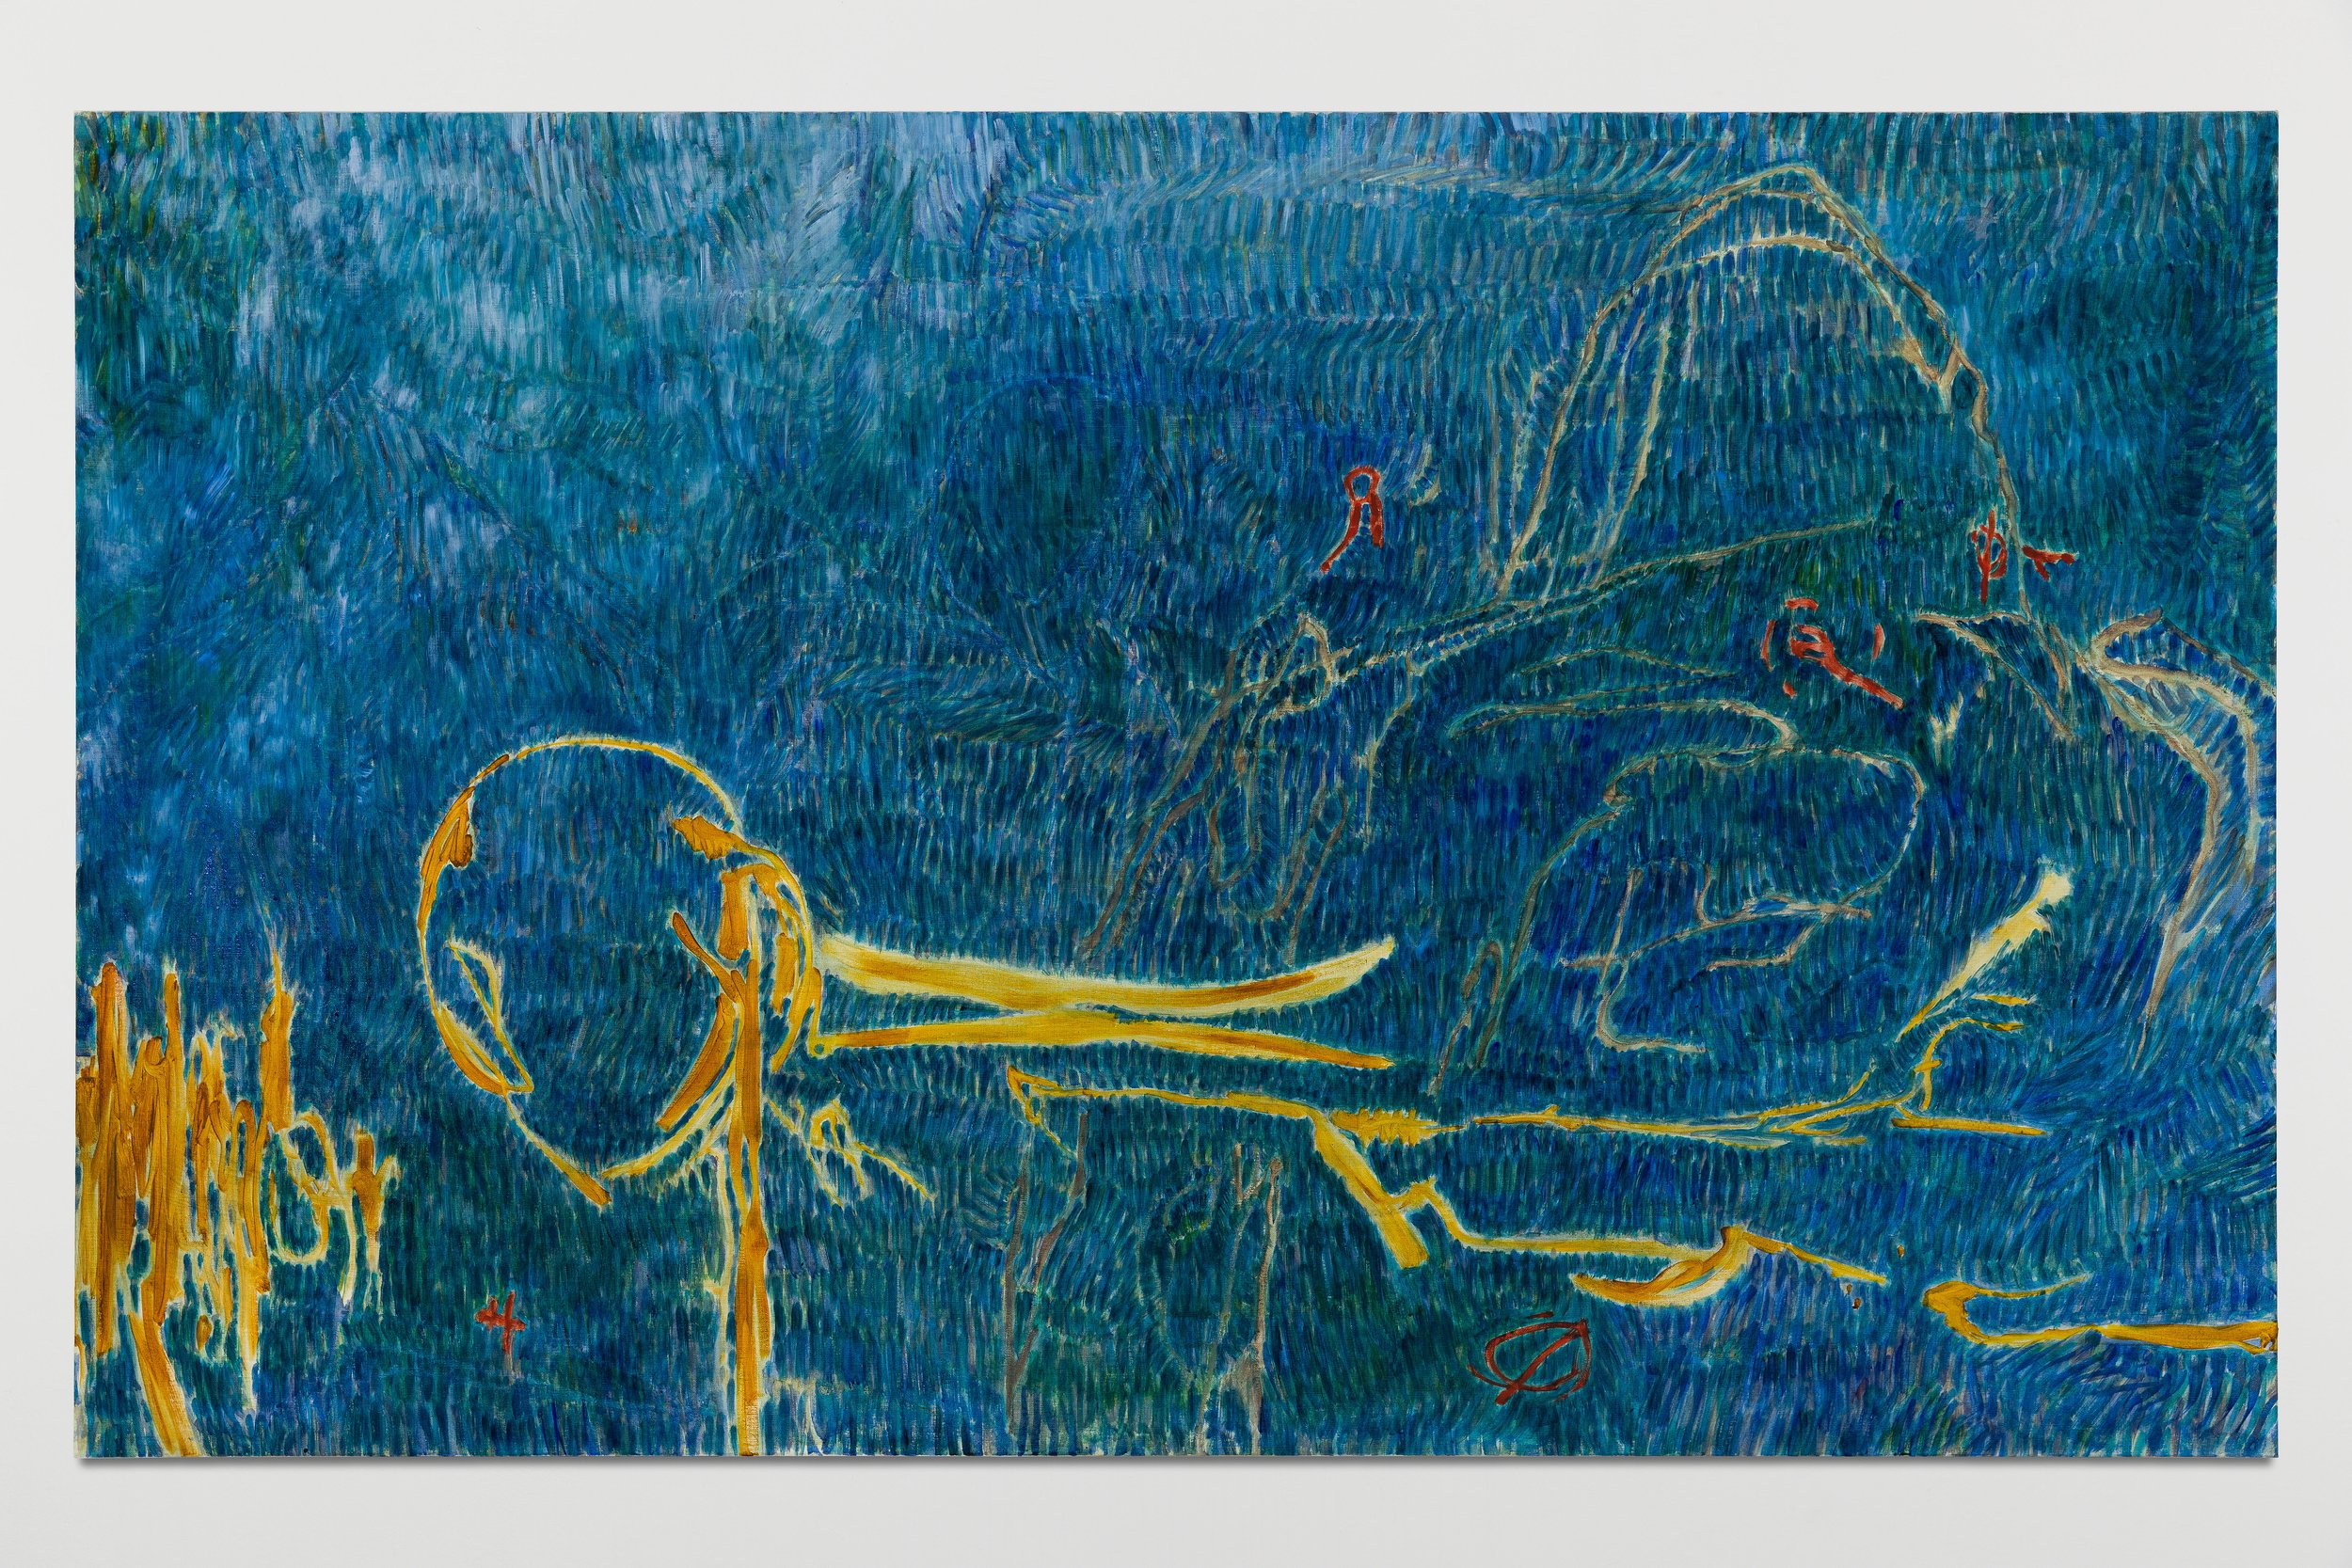   Vies parallèles,  2021 , Oil on canvas, 180 x 110 x 3,5cm 